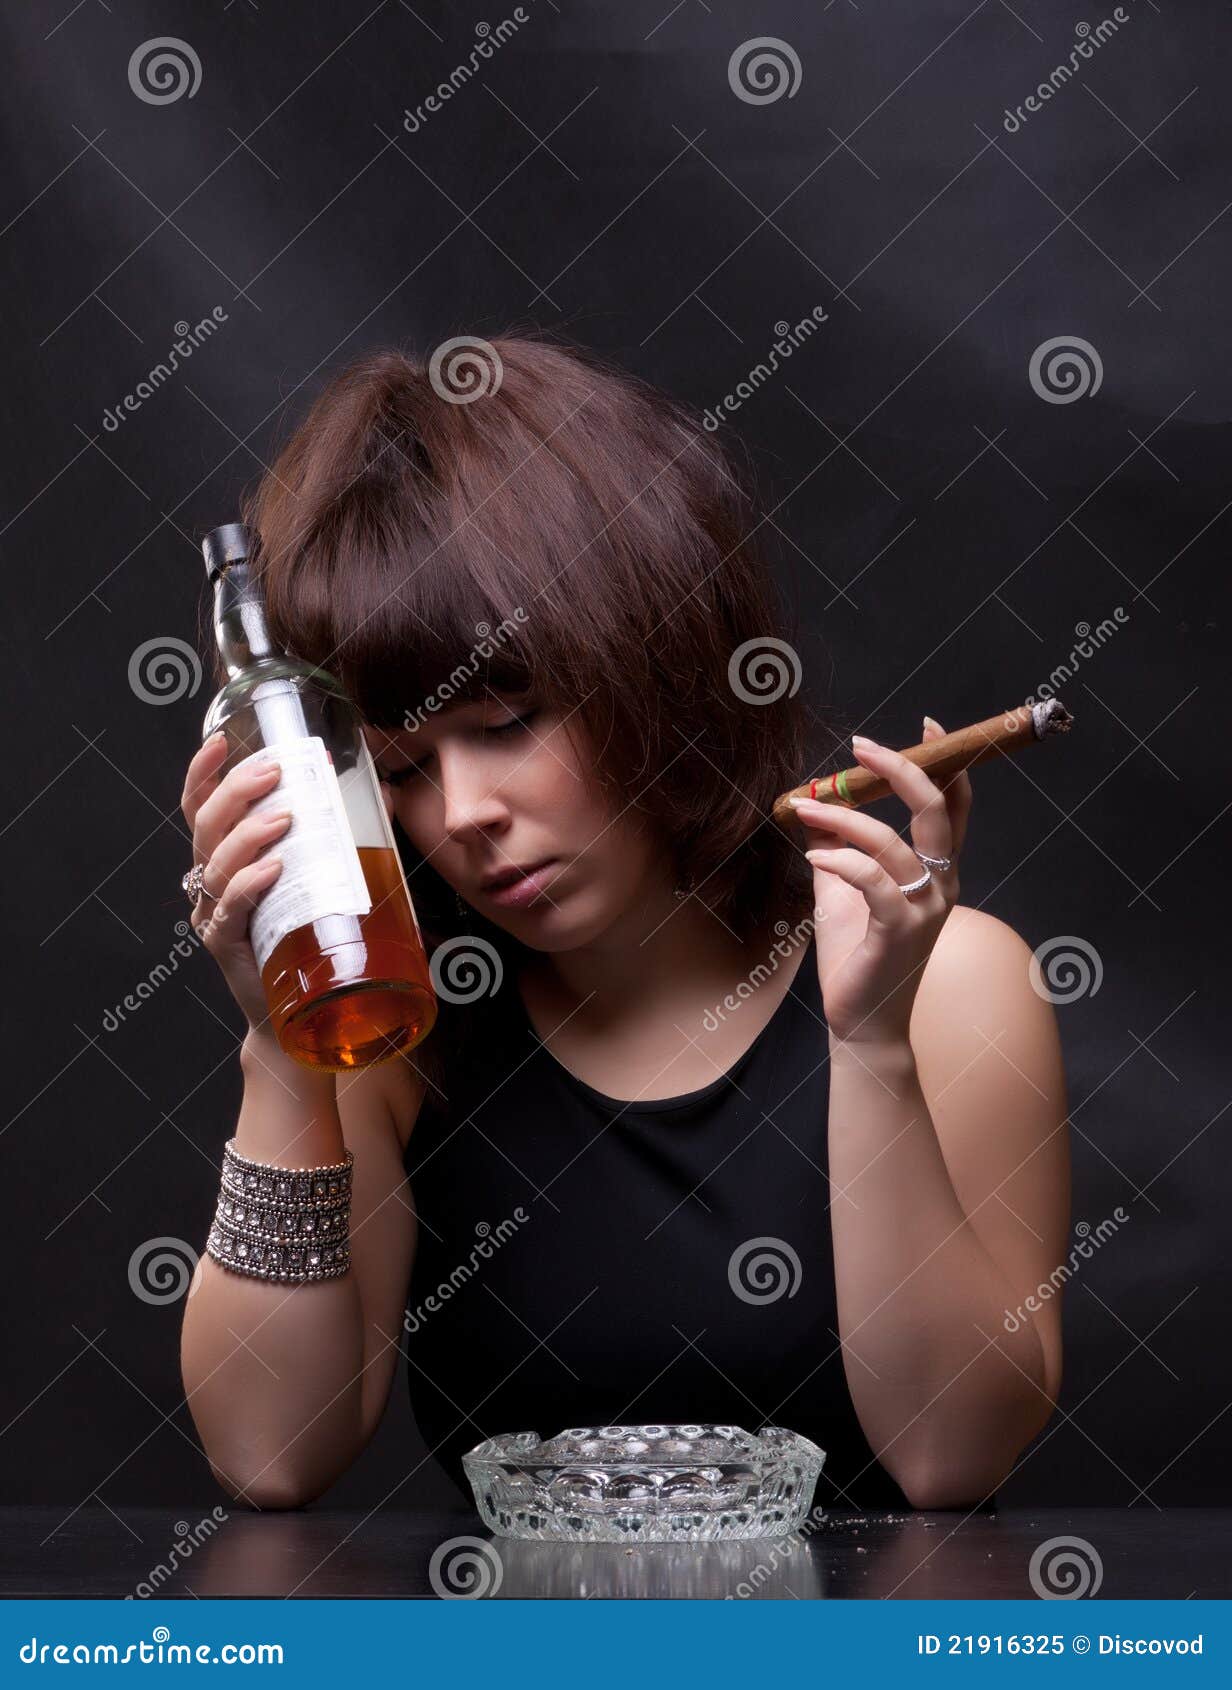 Много курим много пьем. Девушка с виски и сигаретом. Женщина с сигаретой и алкоголем. Девушка с бутылкой и сигаретой. Курящие и пьющие женщины.